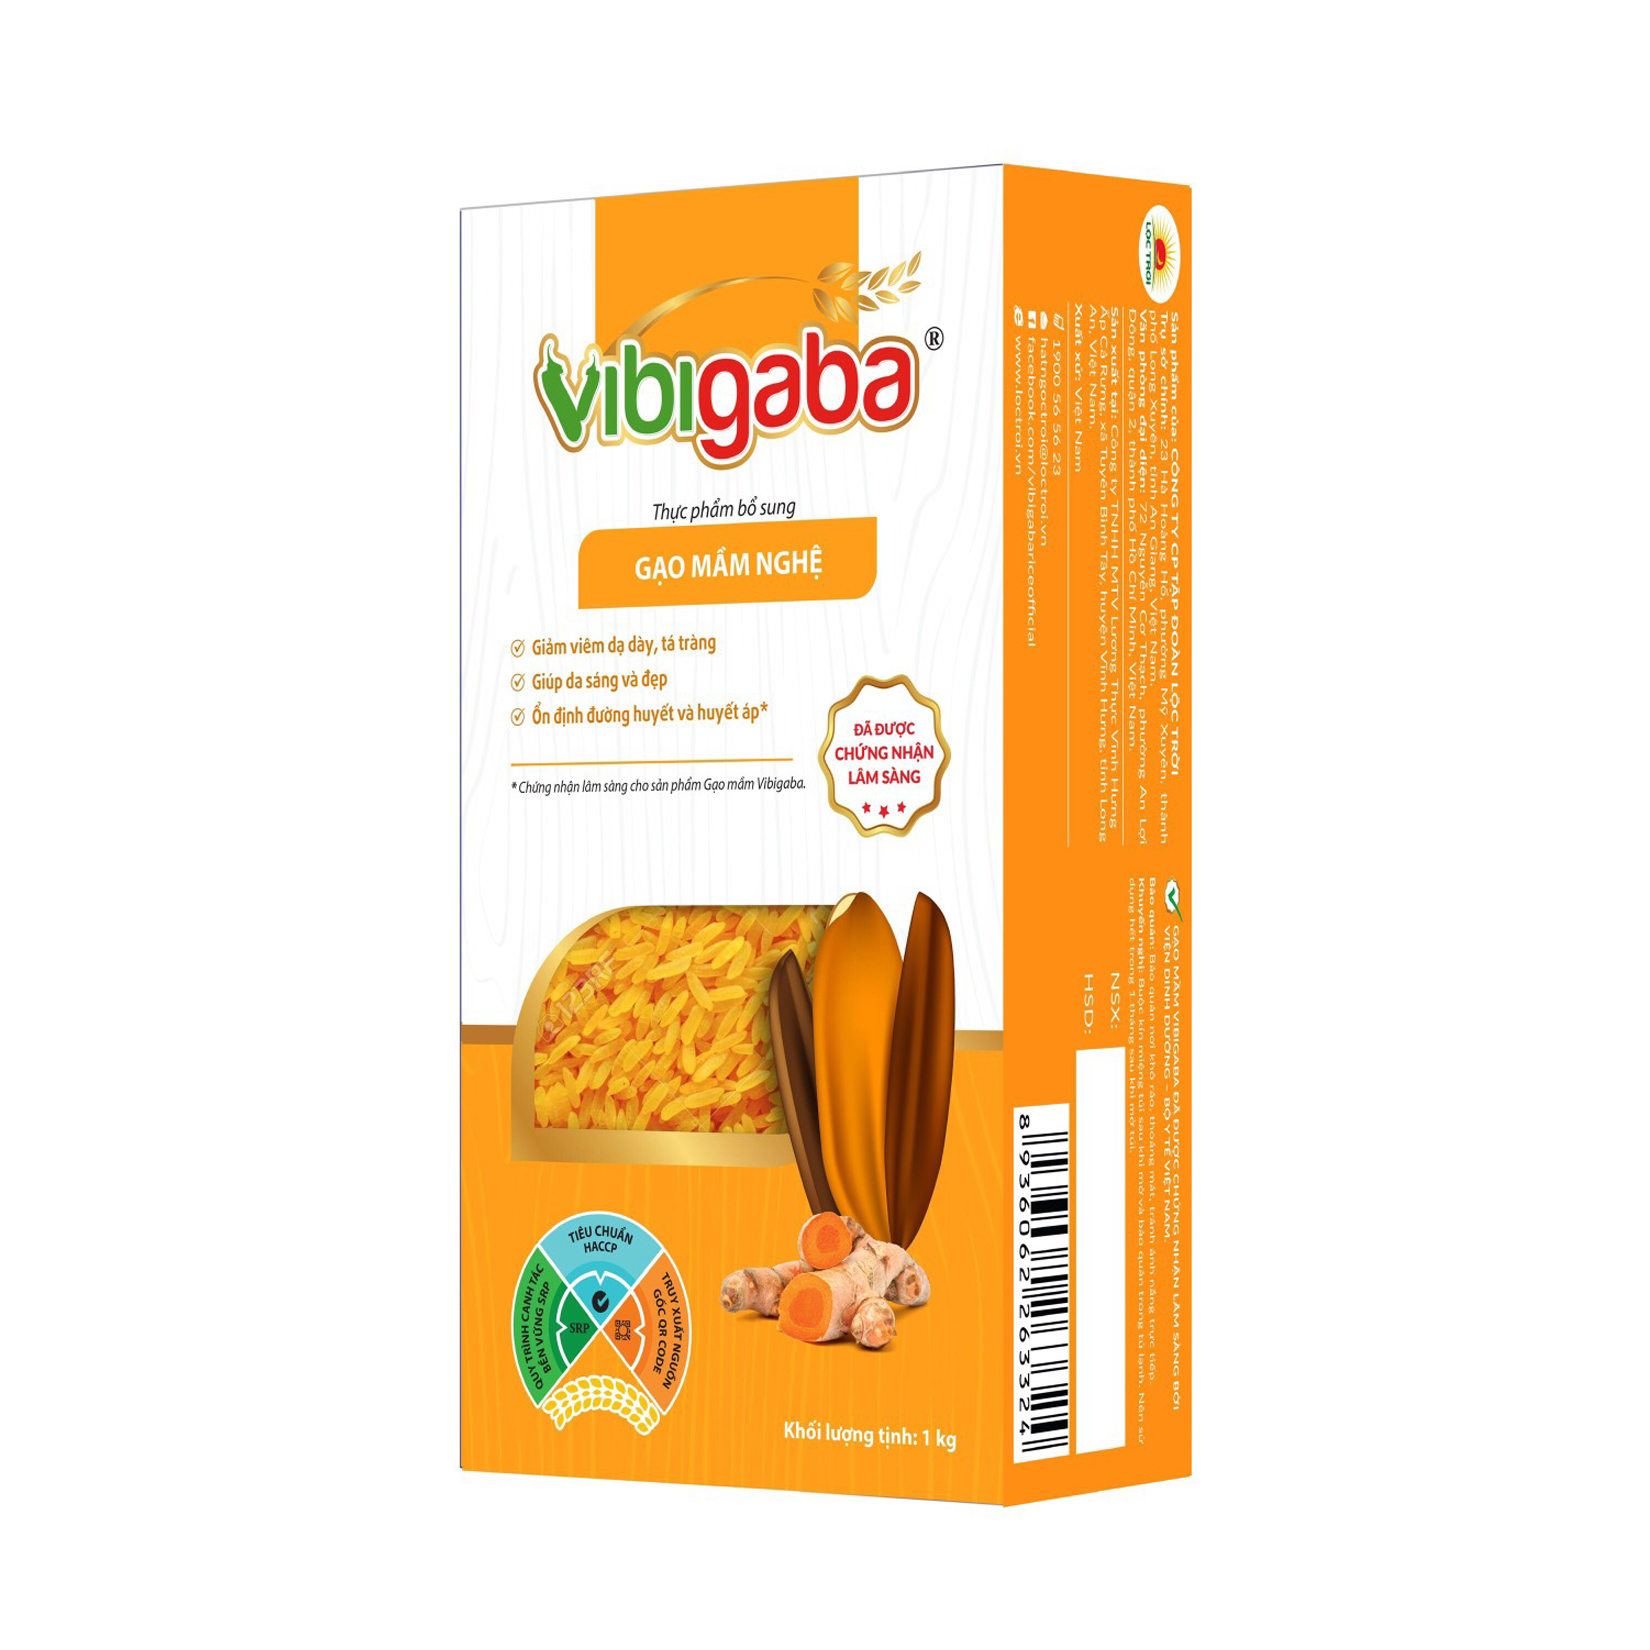 Gạo Mầm Vibigaba Nghệ Cho Người Viêm Loét Dạ Dày, Tá Tràng, Viêm Gan - Hộp 1kg